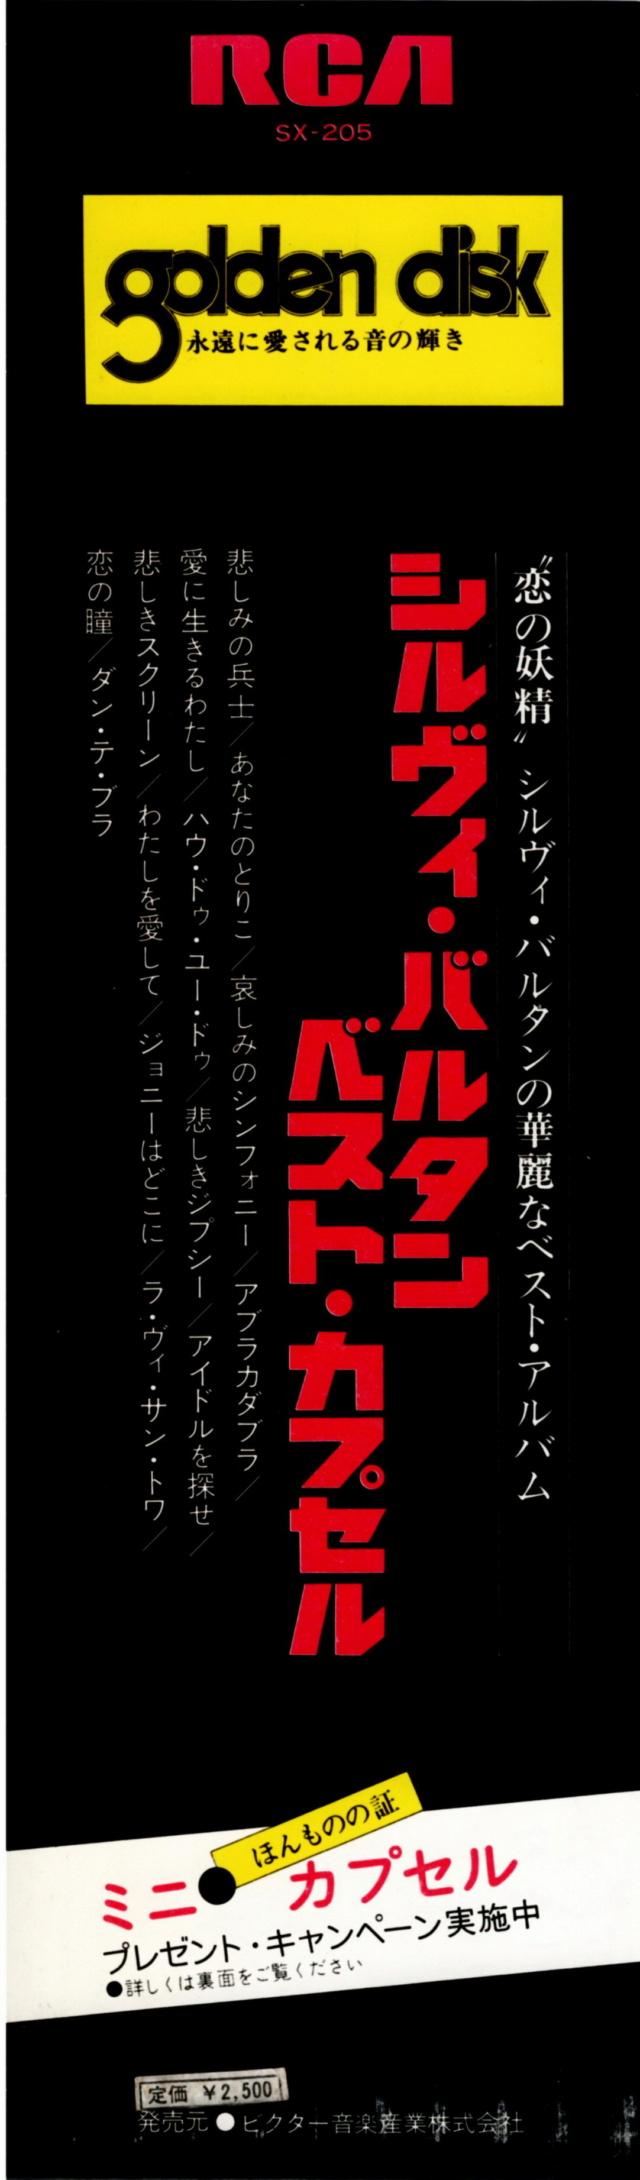 Discographie Japonaise - 4ème partie (33 T COMPILATION) - Page 9 Jpn_3130